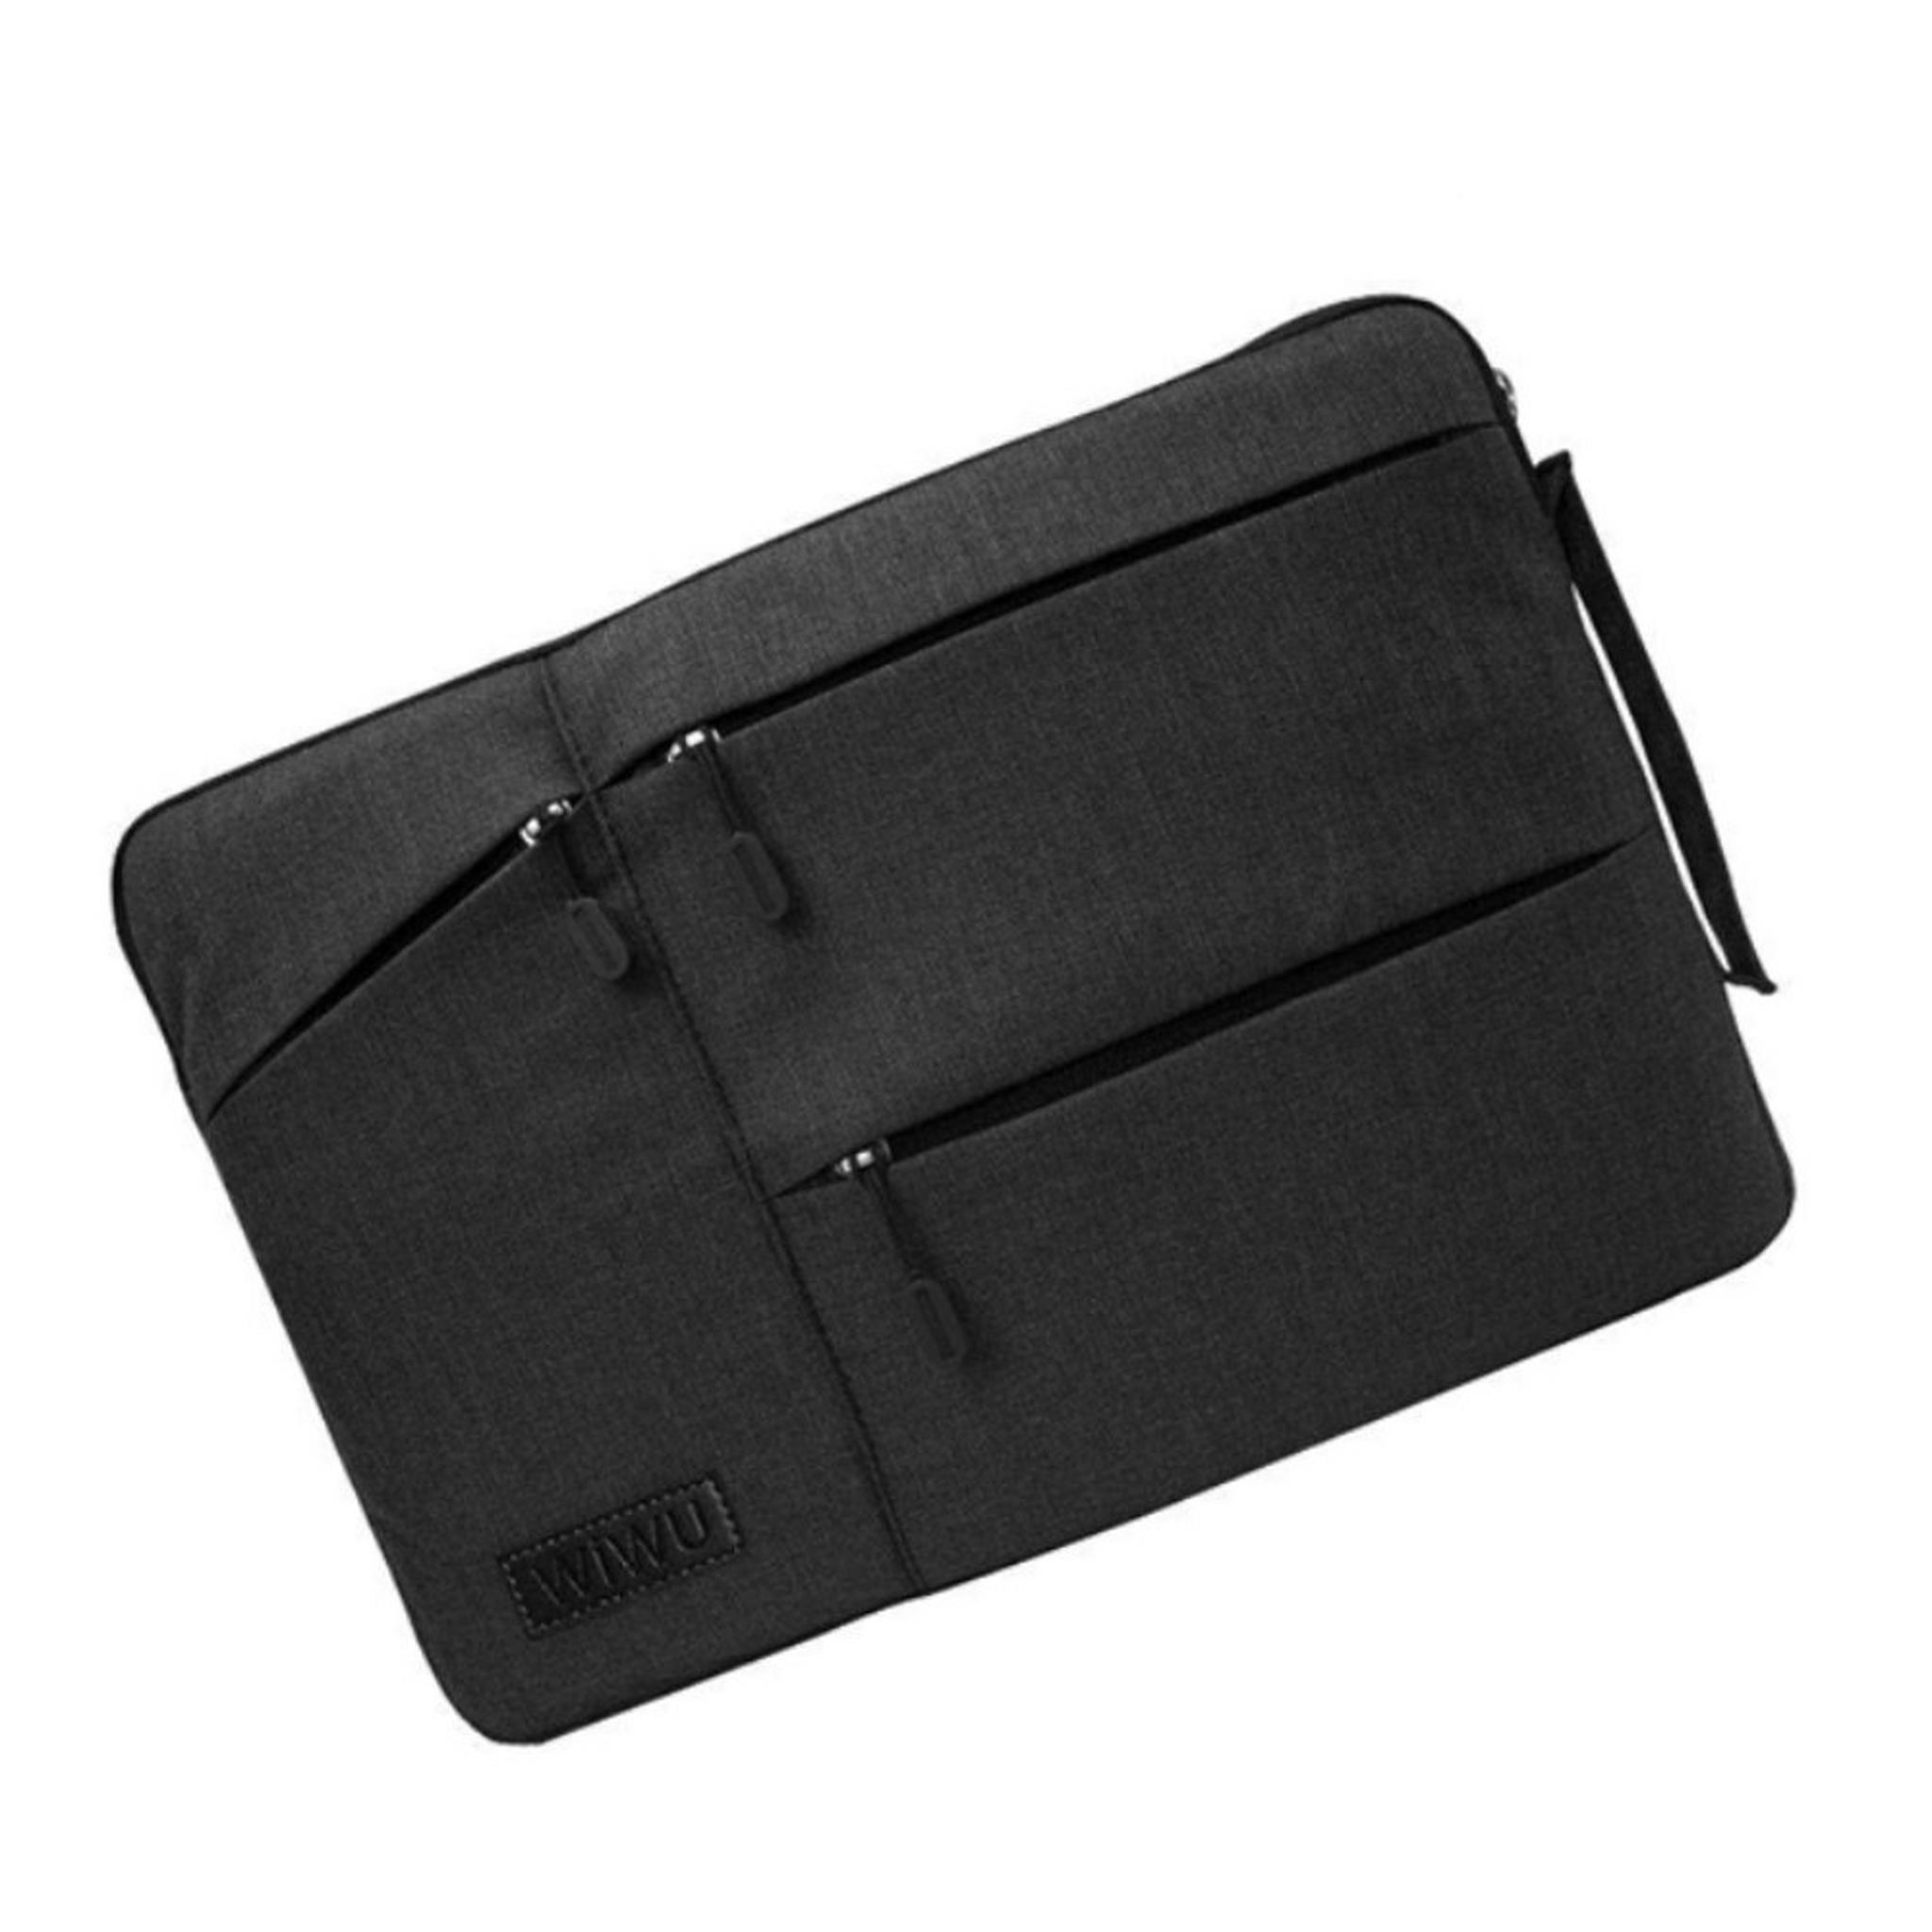 حقيبة بوكيت للابتوب بحجم 15.4 بوصة من ويو - أسود